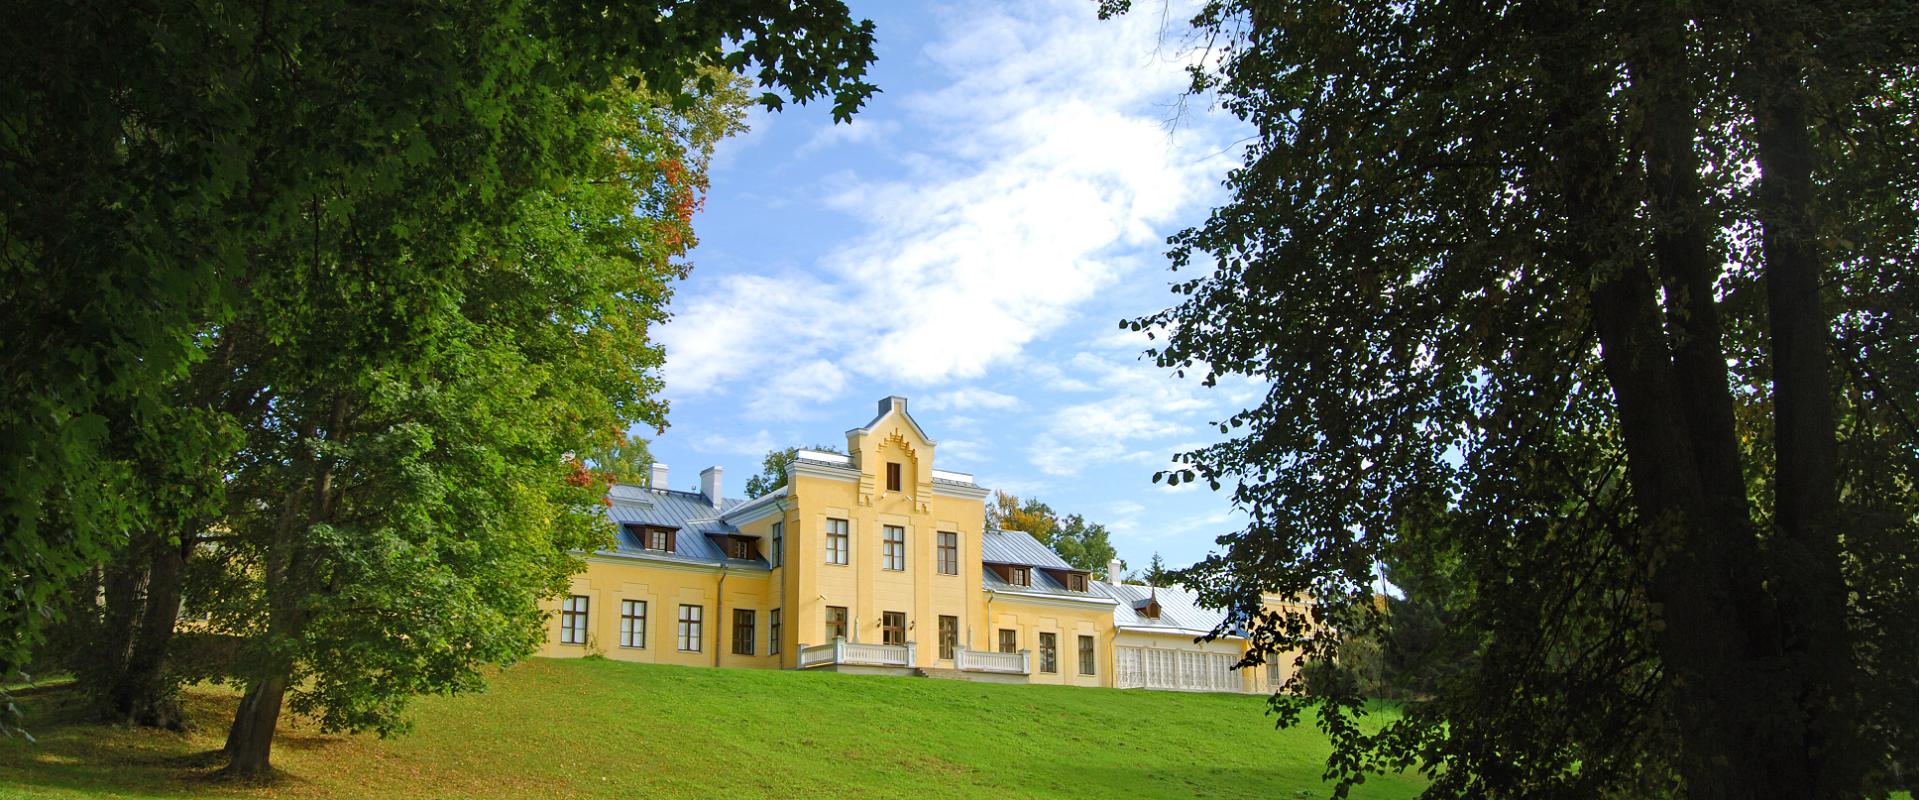 Igaunijas Kara muzejs - ģenerāļa Laidonera muzejs